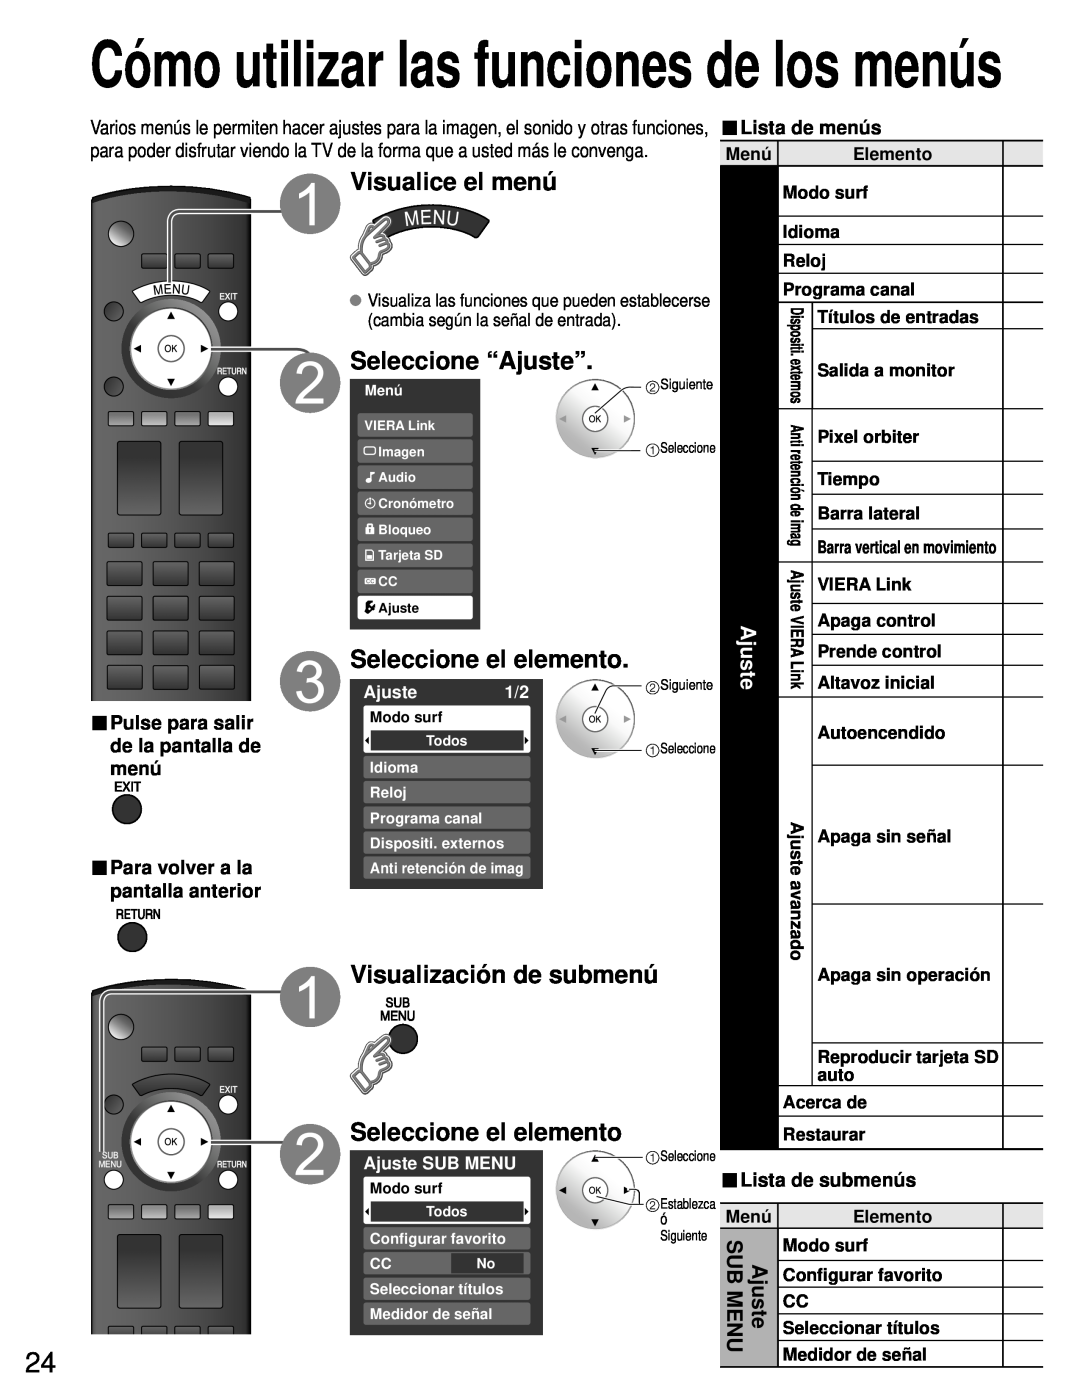 Panasonic TH-50PZ80U Seleccione “Ajuste”, Visualización de submenú, Lista de menús, de la pantalla de, pantalla anterior 